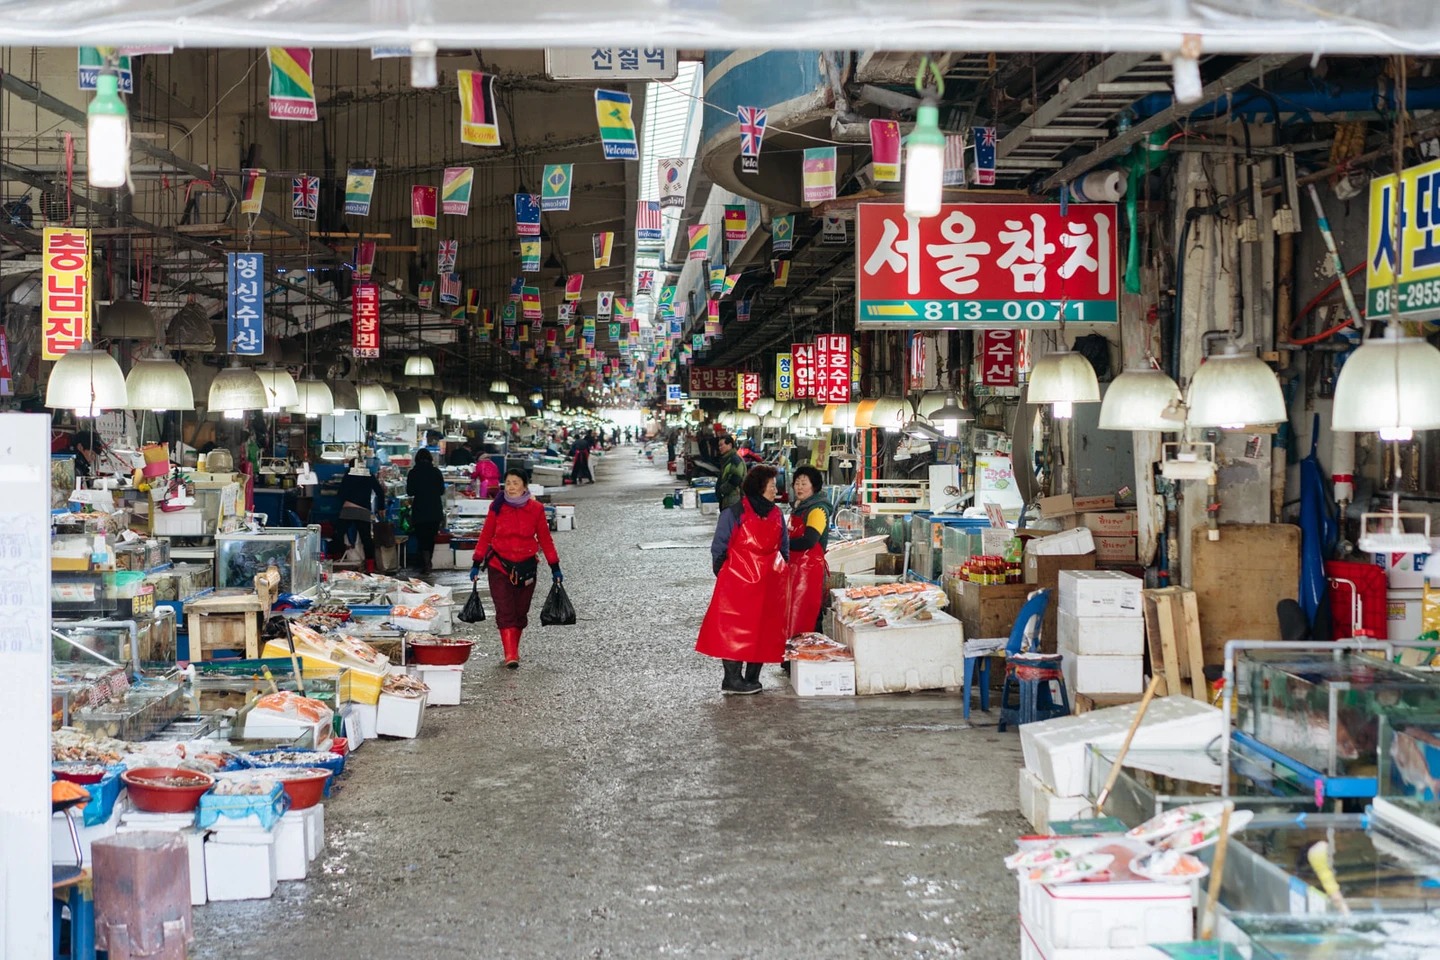 Cô gái Việt kể chuyện đi chợ hải sản tươi sống nổi tiếng Hàn Quốc: Có thể ăn ngay tại chợ luôn, 4 triệu đồng một bữa không gọi là đắt - Ảnh 8.